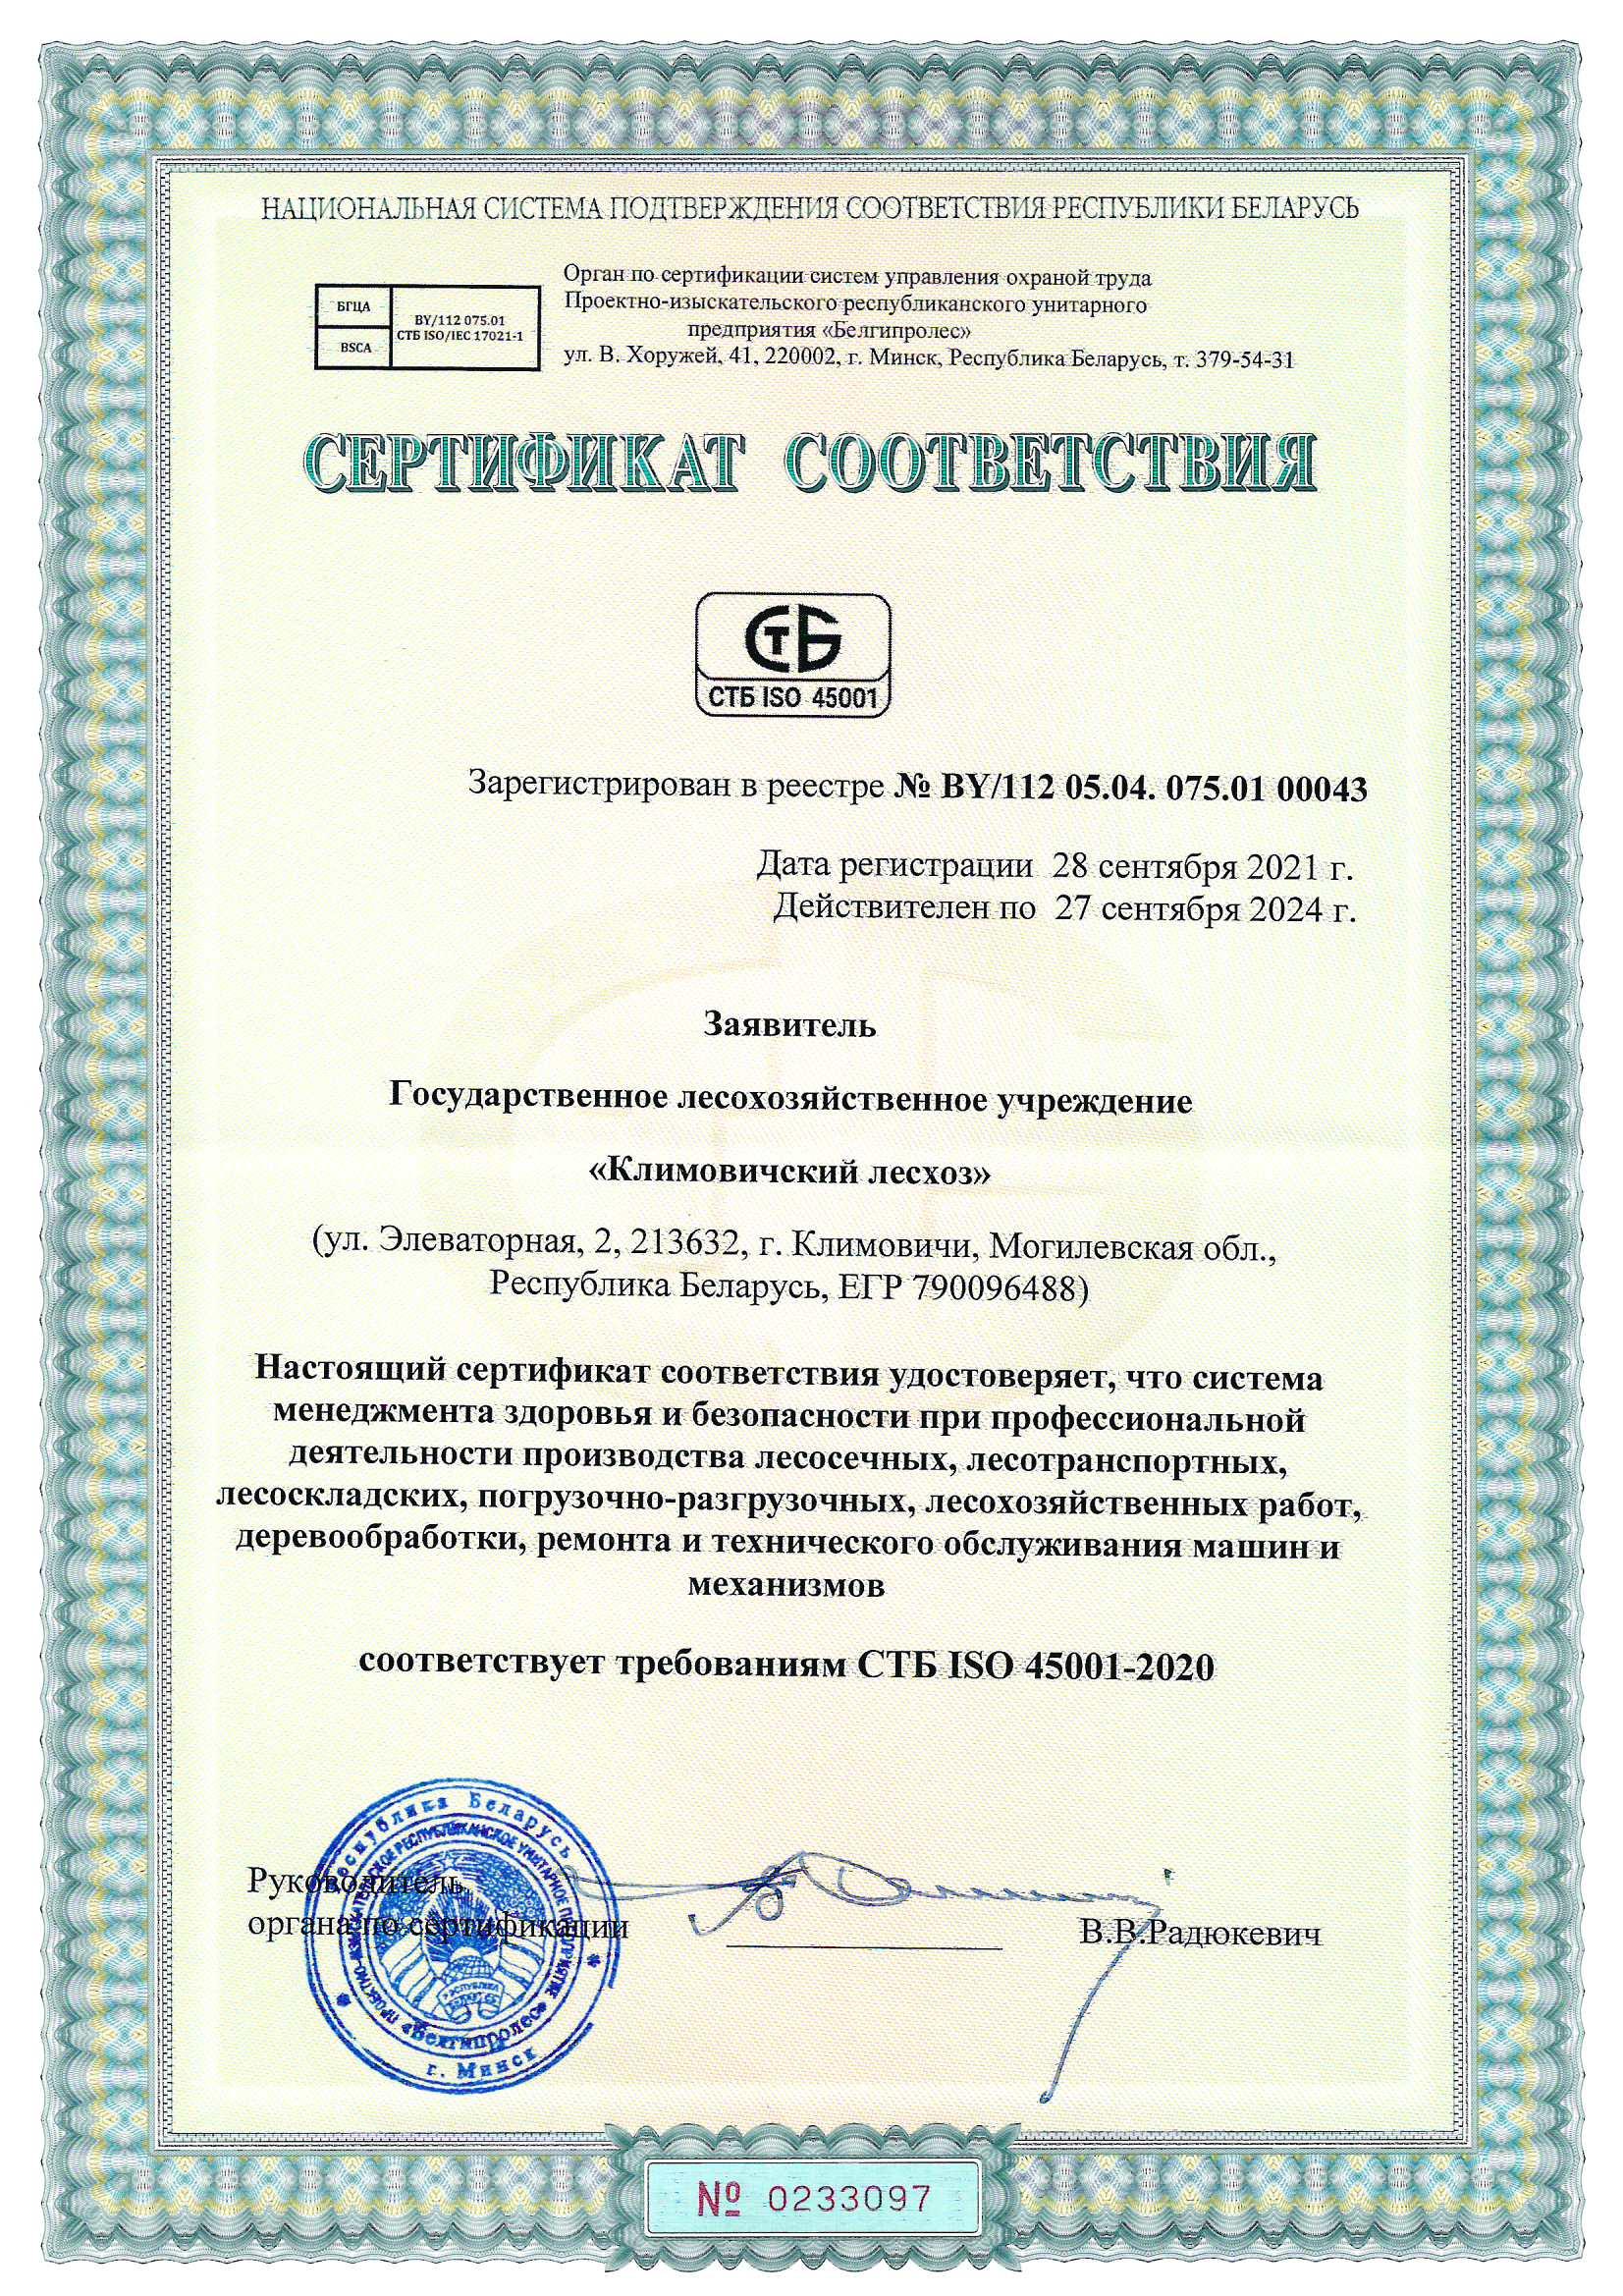 Сертификат соответствия требованиям СТБ ISO 45001-2020